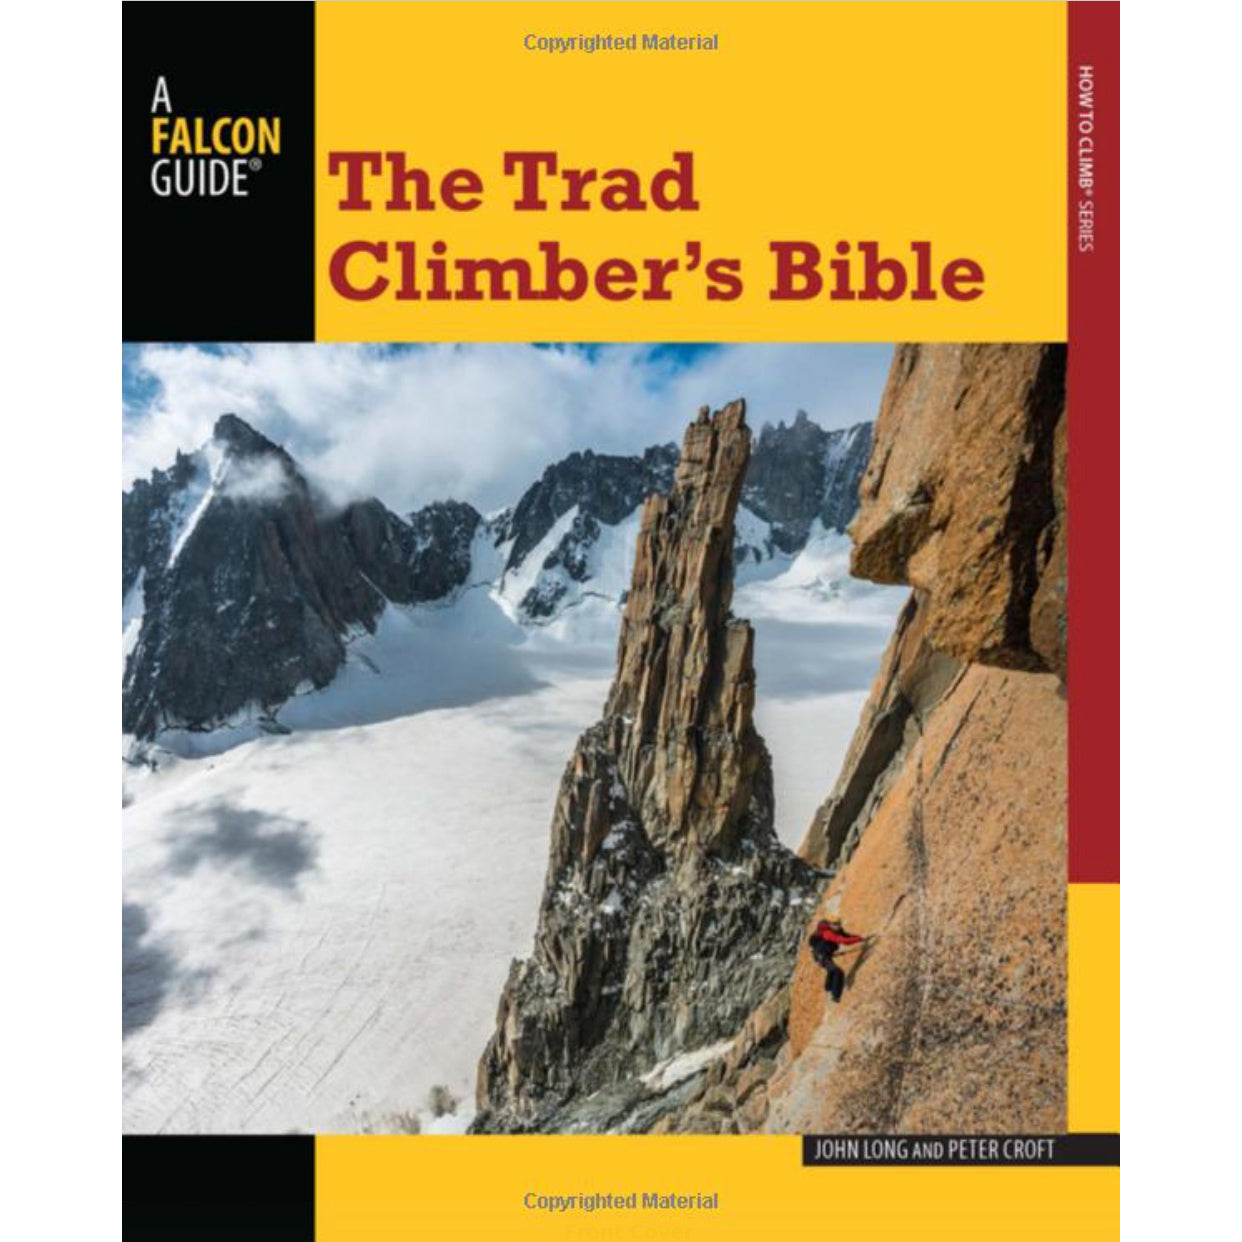 trad climber's bible